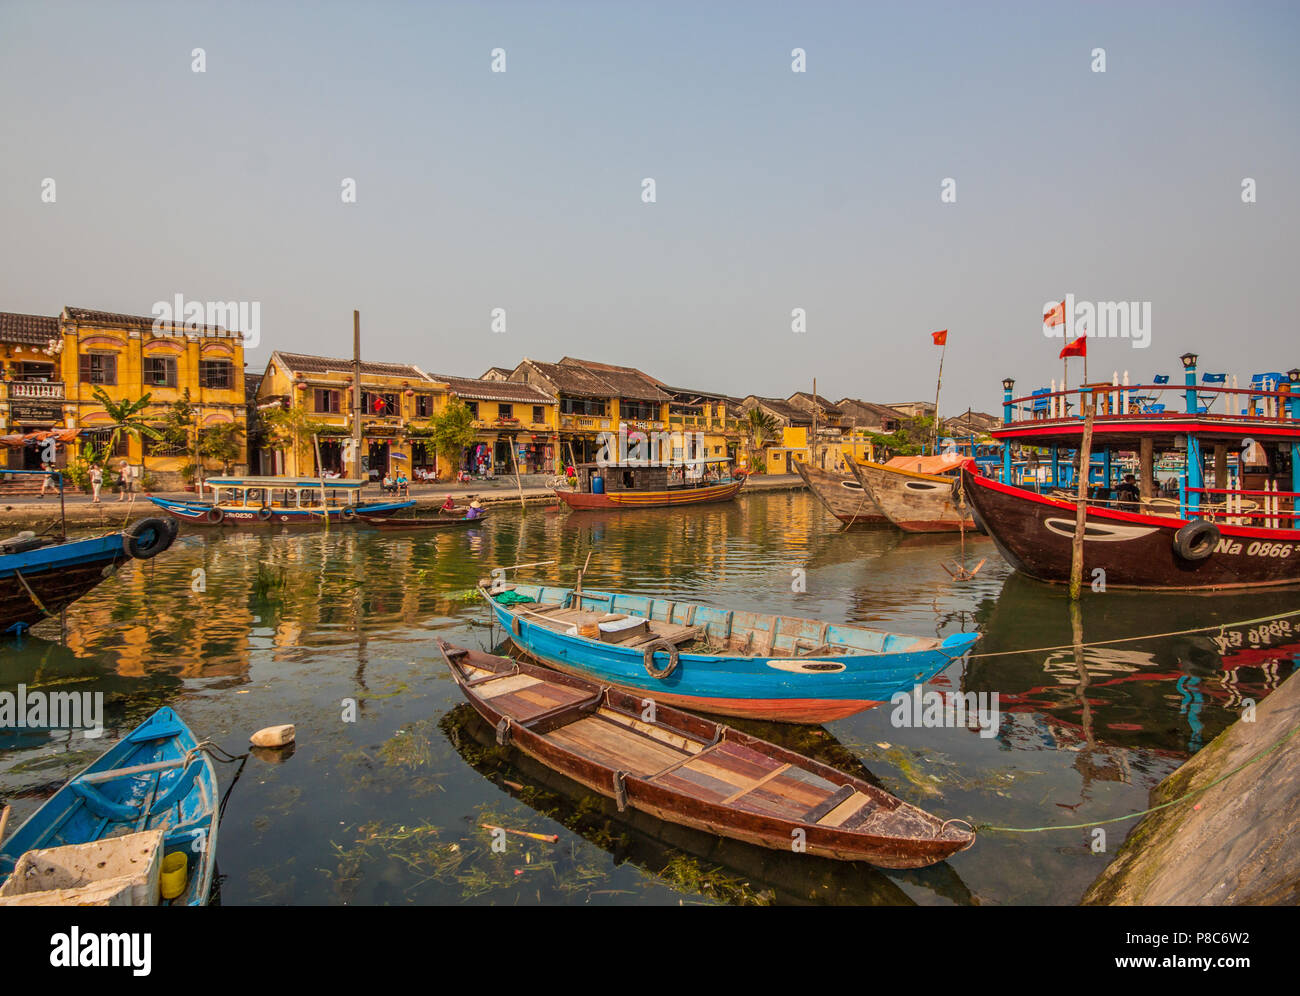 Hoi An, Vietnam - Patrimonio Mundial de la Unesco, elegida para el  excepcionalmente bien conservado puerto comercial del sureste asiático.  Aquí, en particular, el casco antiguo Fotografía de stock - Alamy